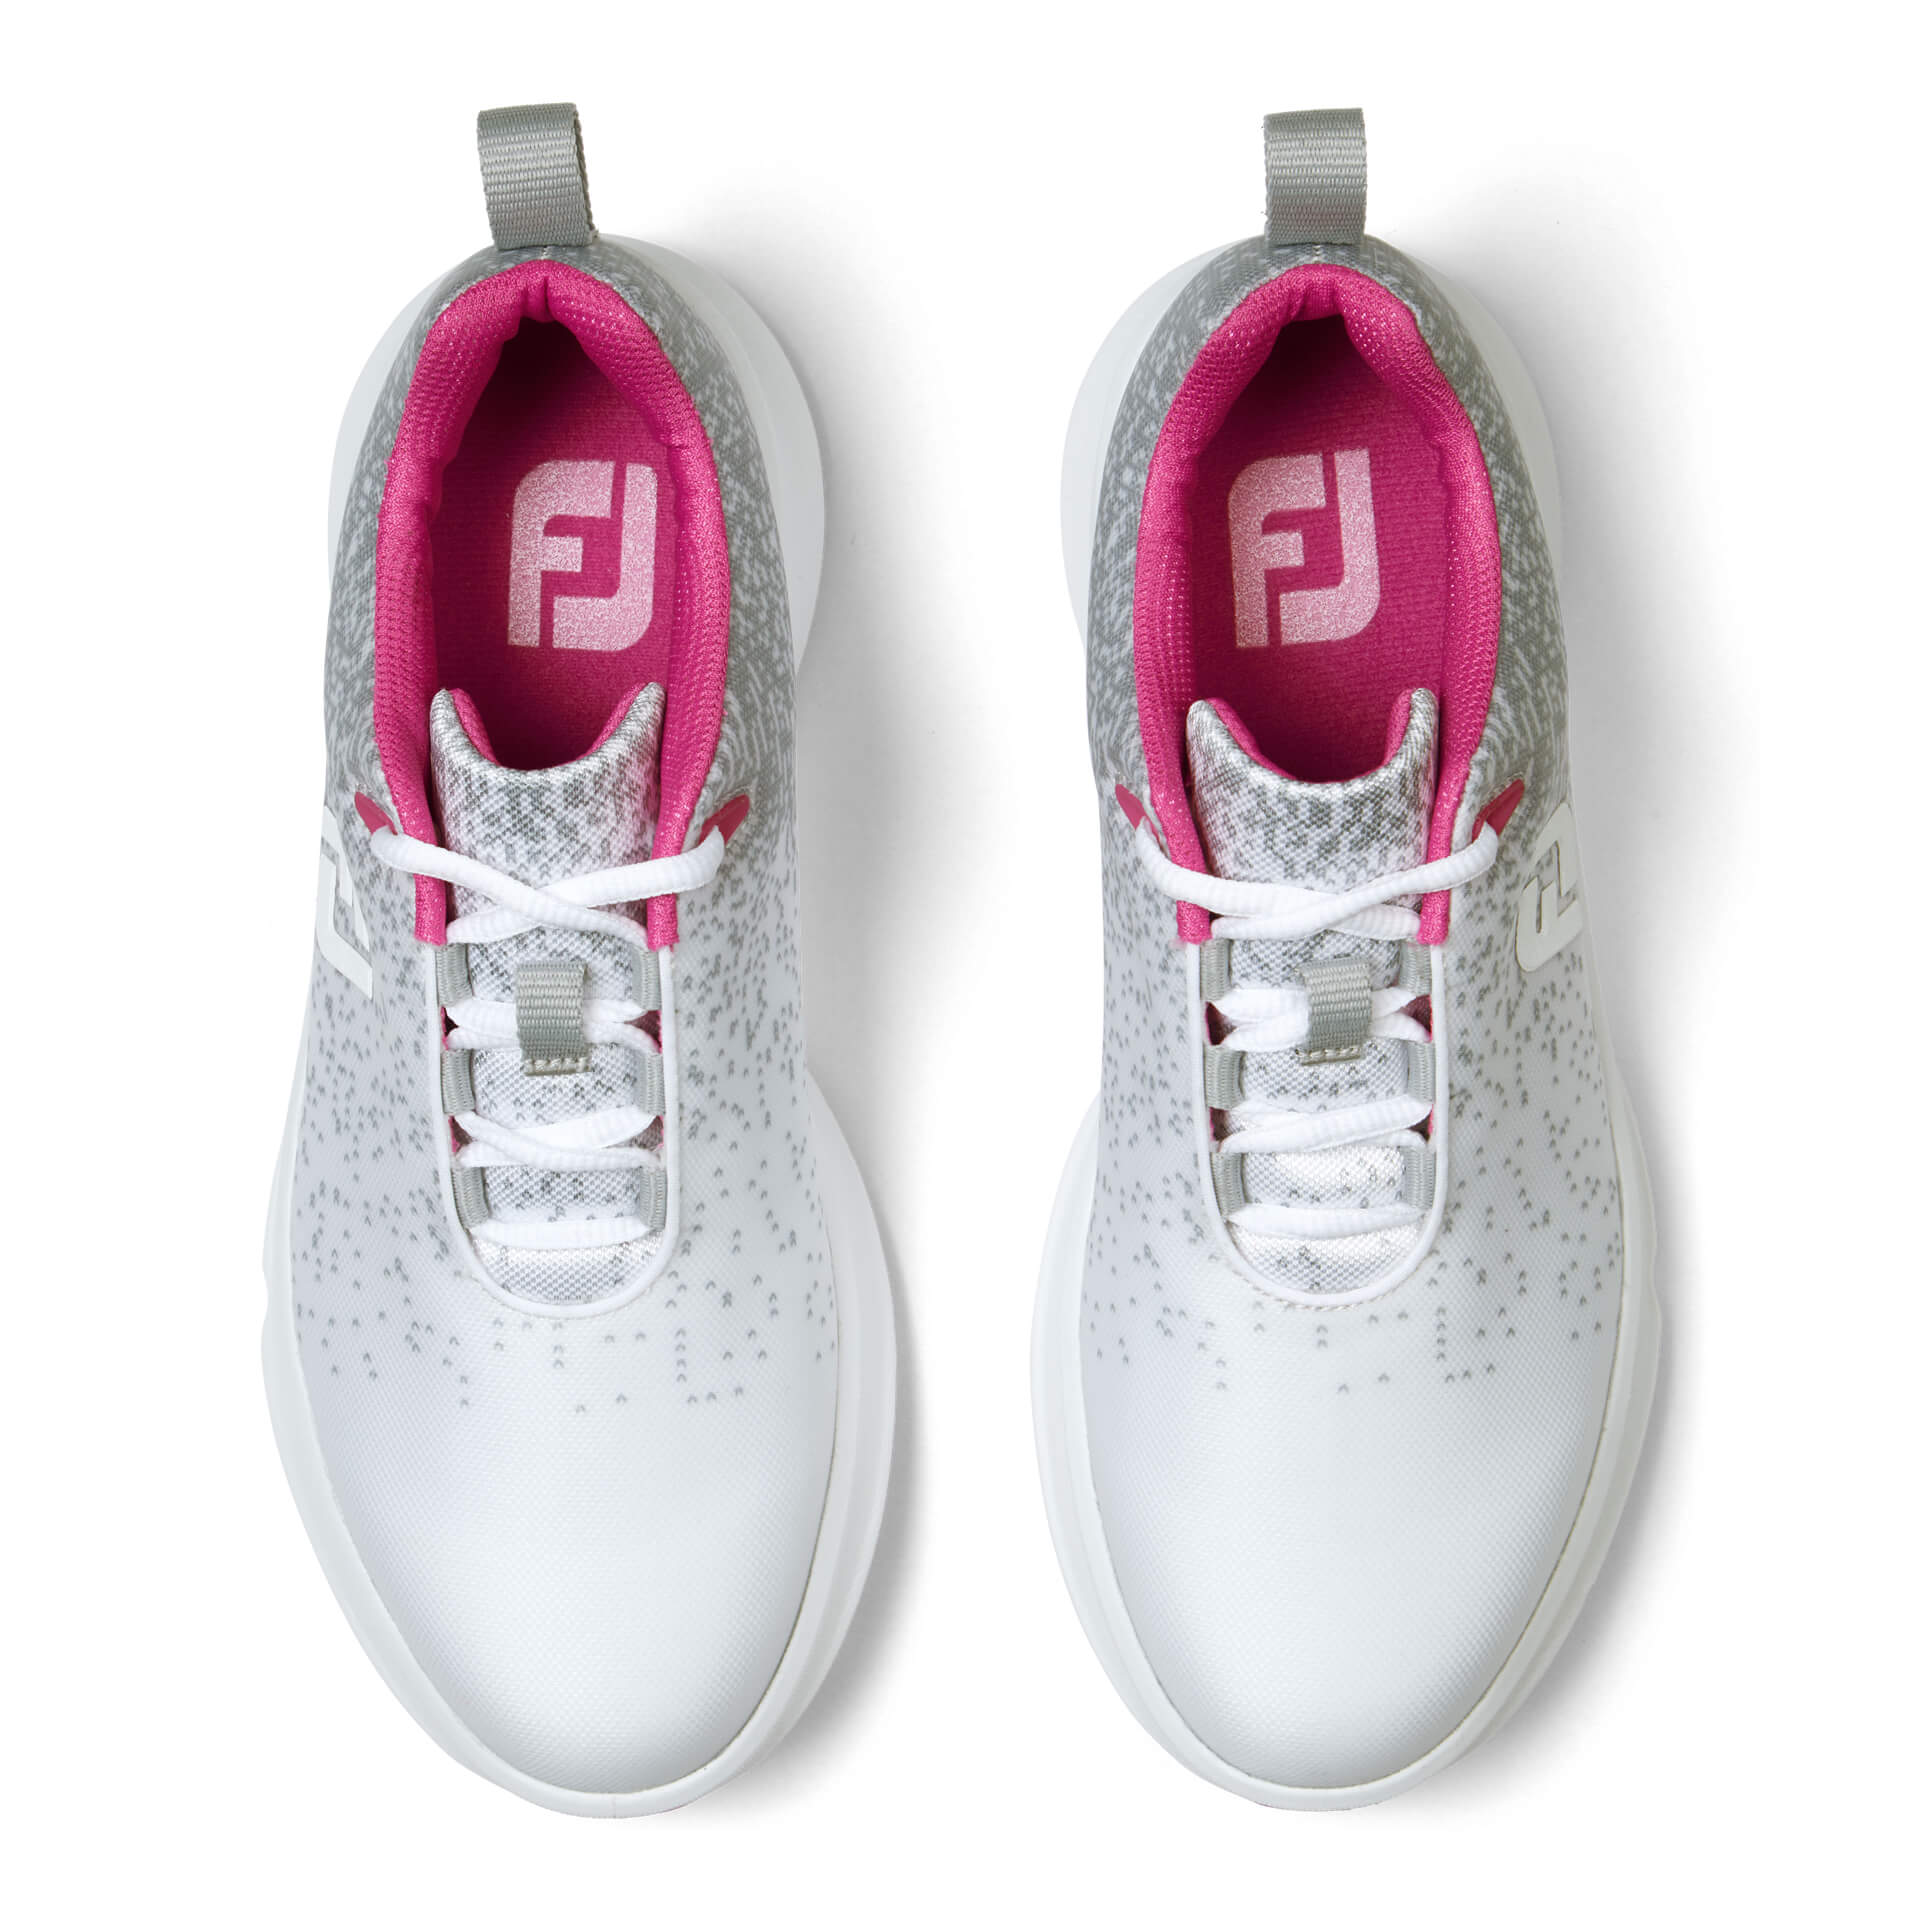 FootJoy Leisure Ladies Silver/White/Fushsia Shoes